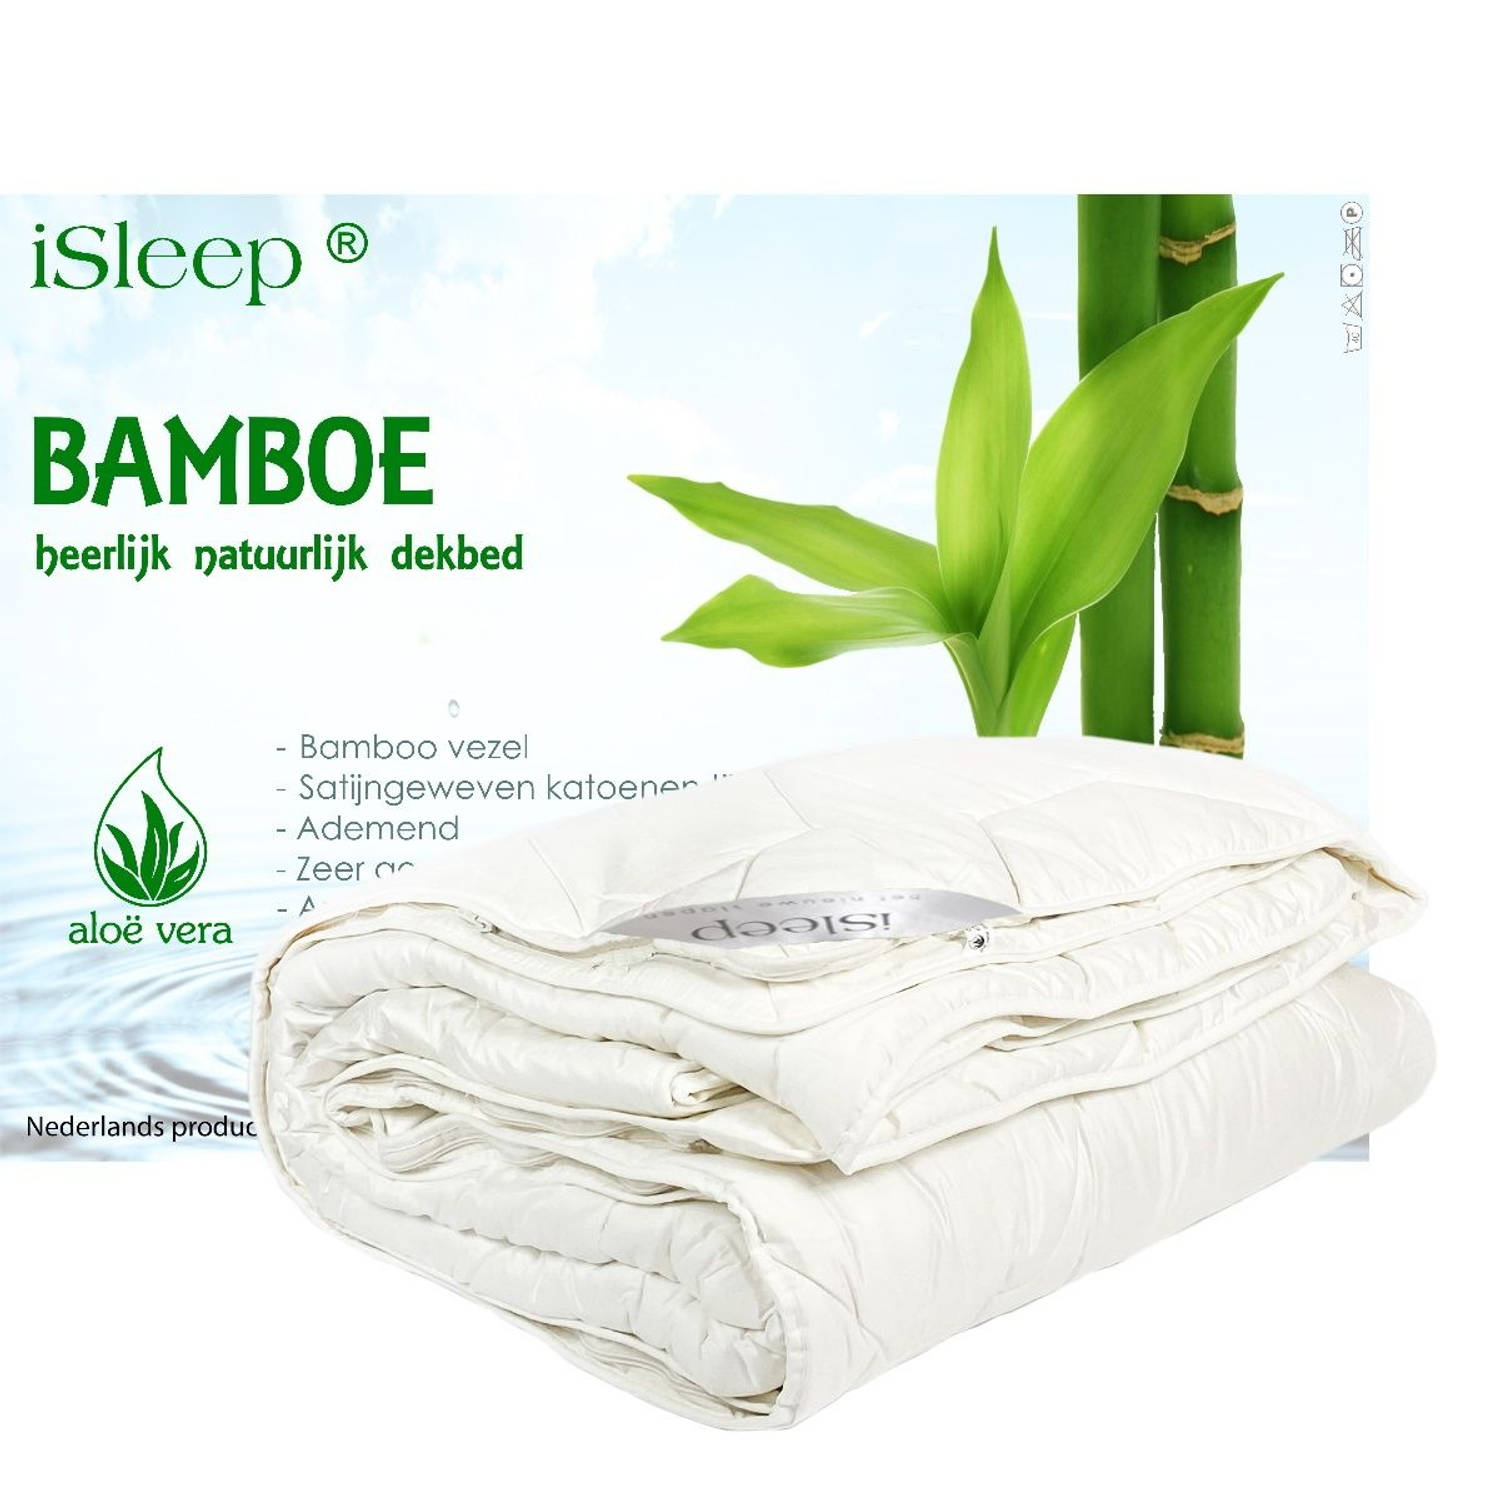 iSleep 4-seizoenen dekbed Bamboo Comfort DeLuxe Lits-jumeaux 240x220 cm